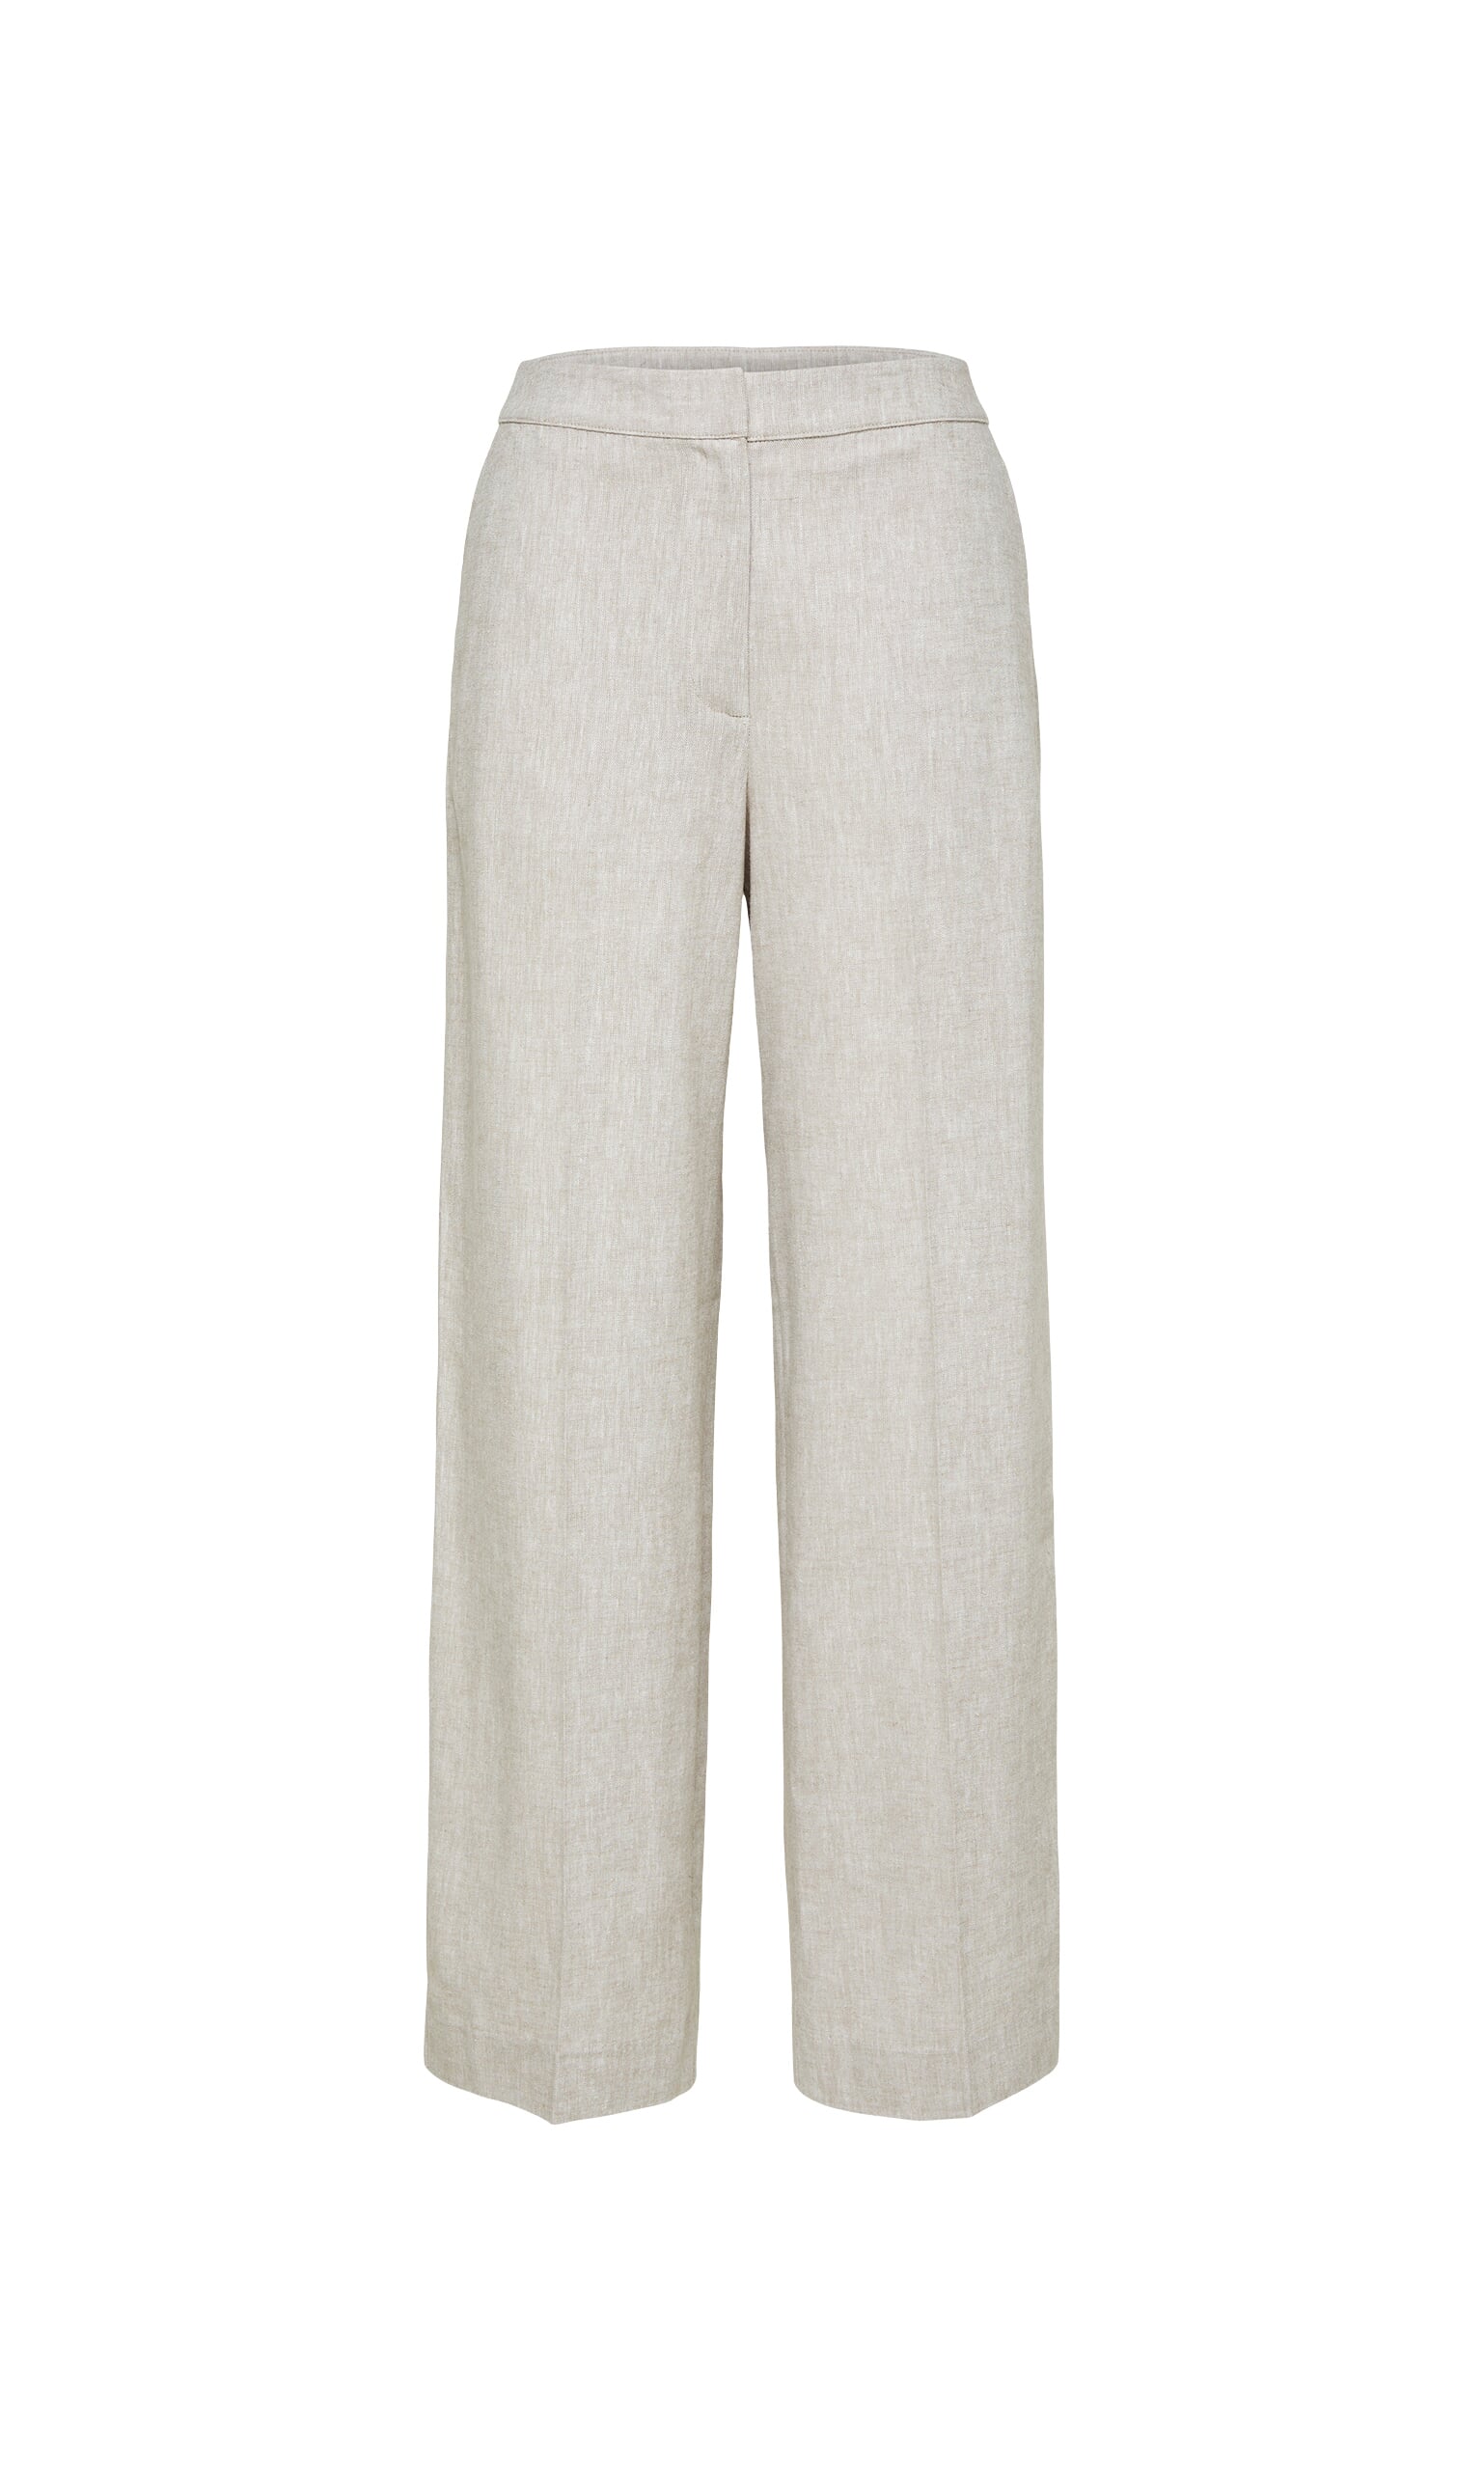 Lina linen pants - Plümo Ltd